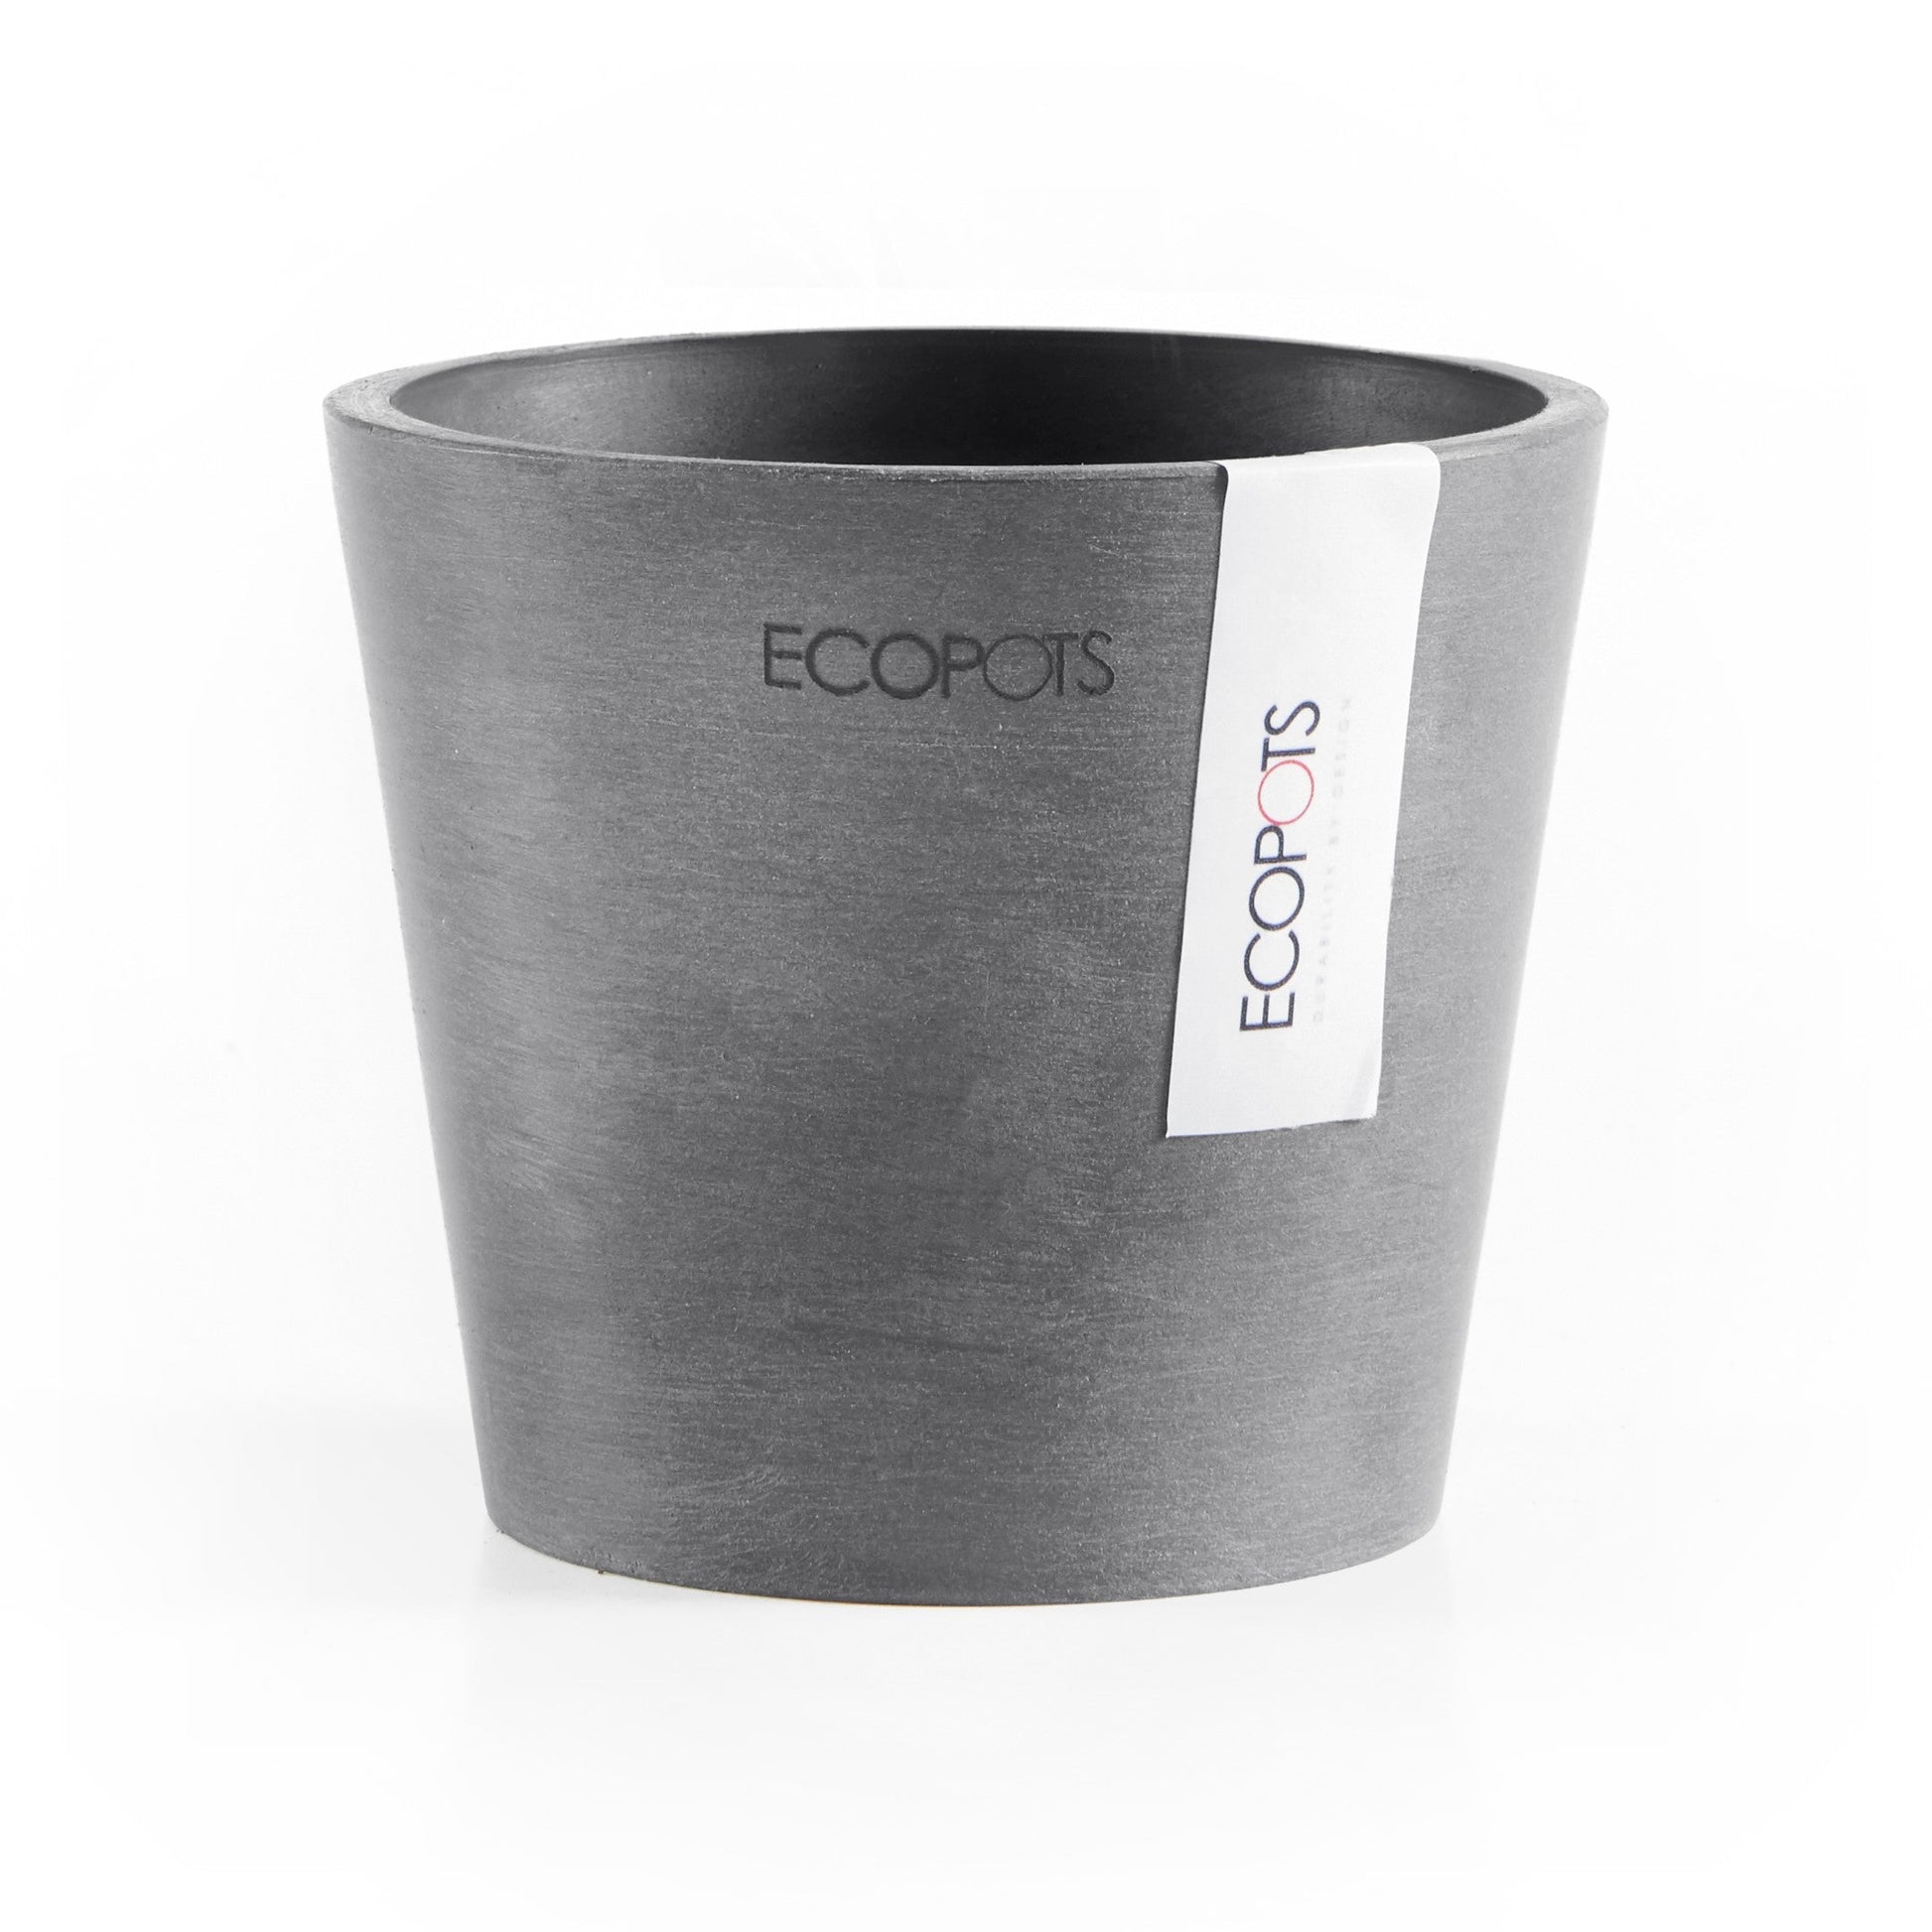 Kukkaruukku - Ecopots - Amsterdam 10,5cm harmaa - Ecopotskauppa - Uuden aikakauden kukkaruukku